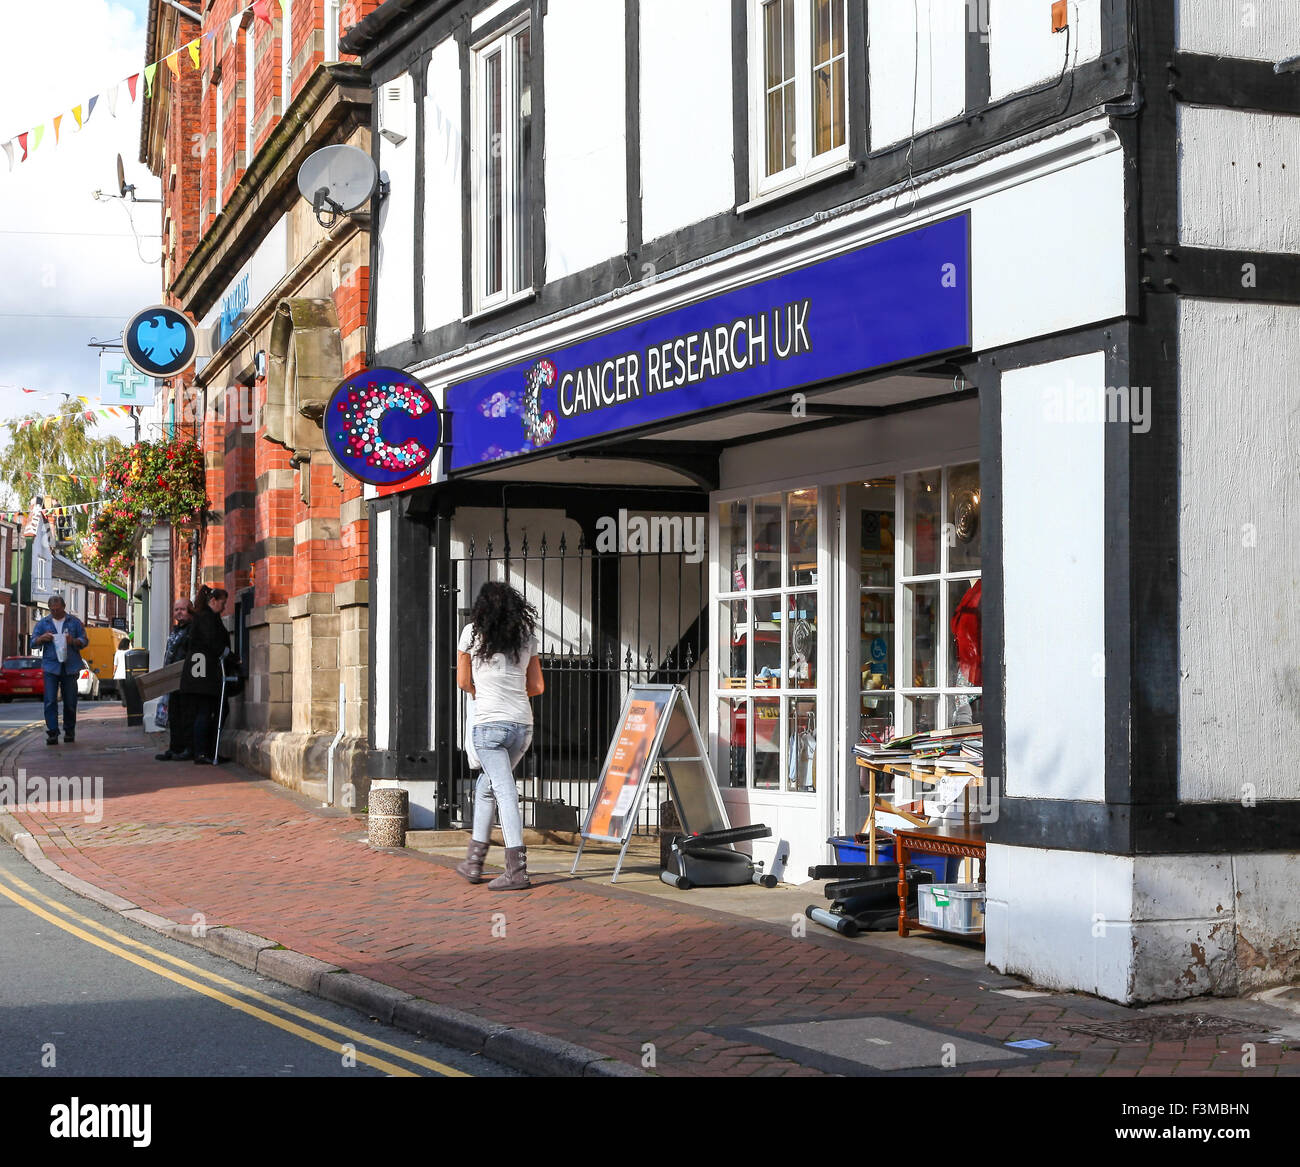 Die Fassade oder die Fassade eines Cancer Research UK Shops im Middlewich Cheshire England UK Stockfoto